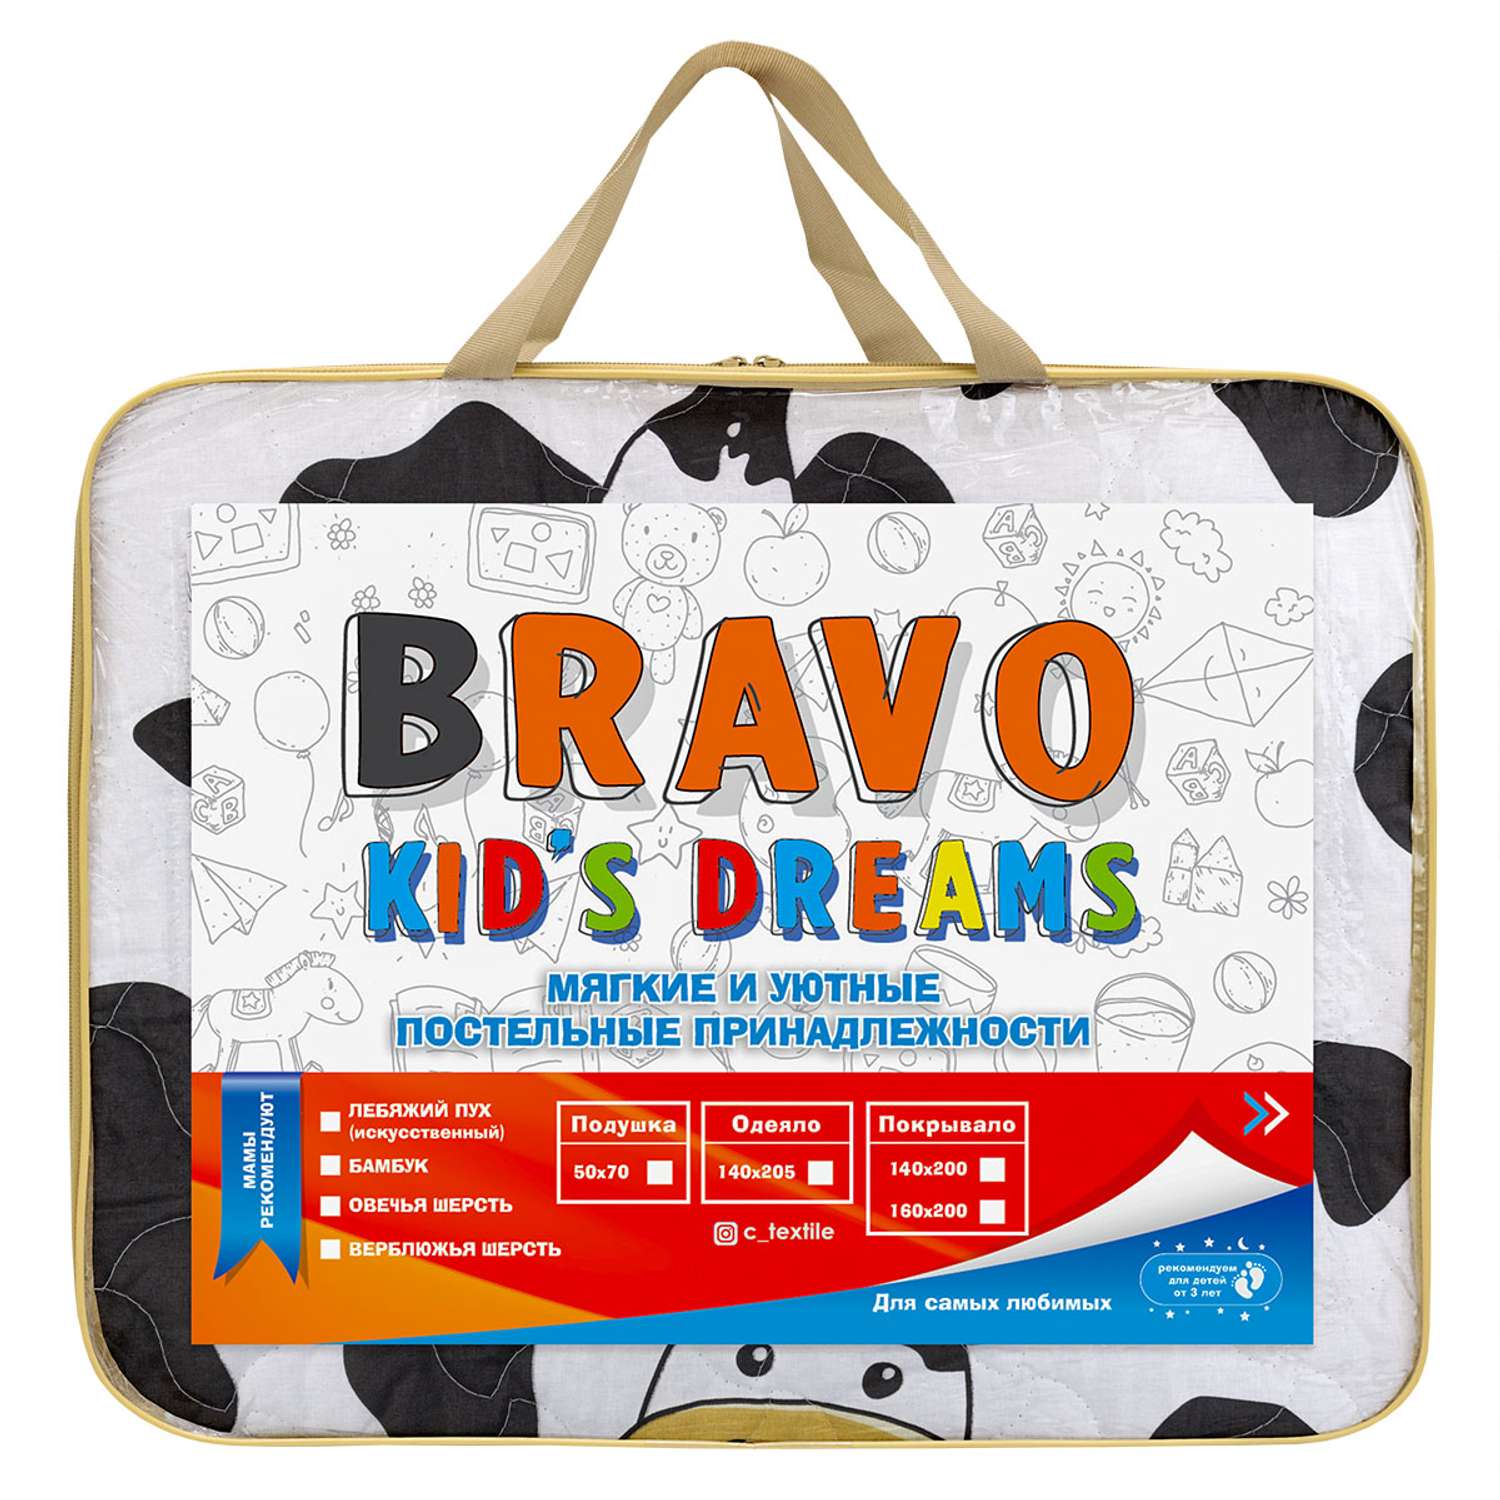 Покрывало BRAVO kids dreams Молоко 160х200 см - фото 7